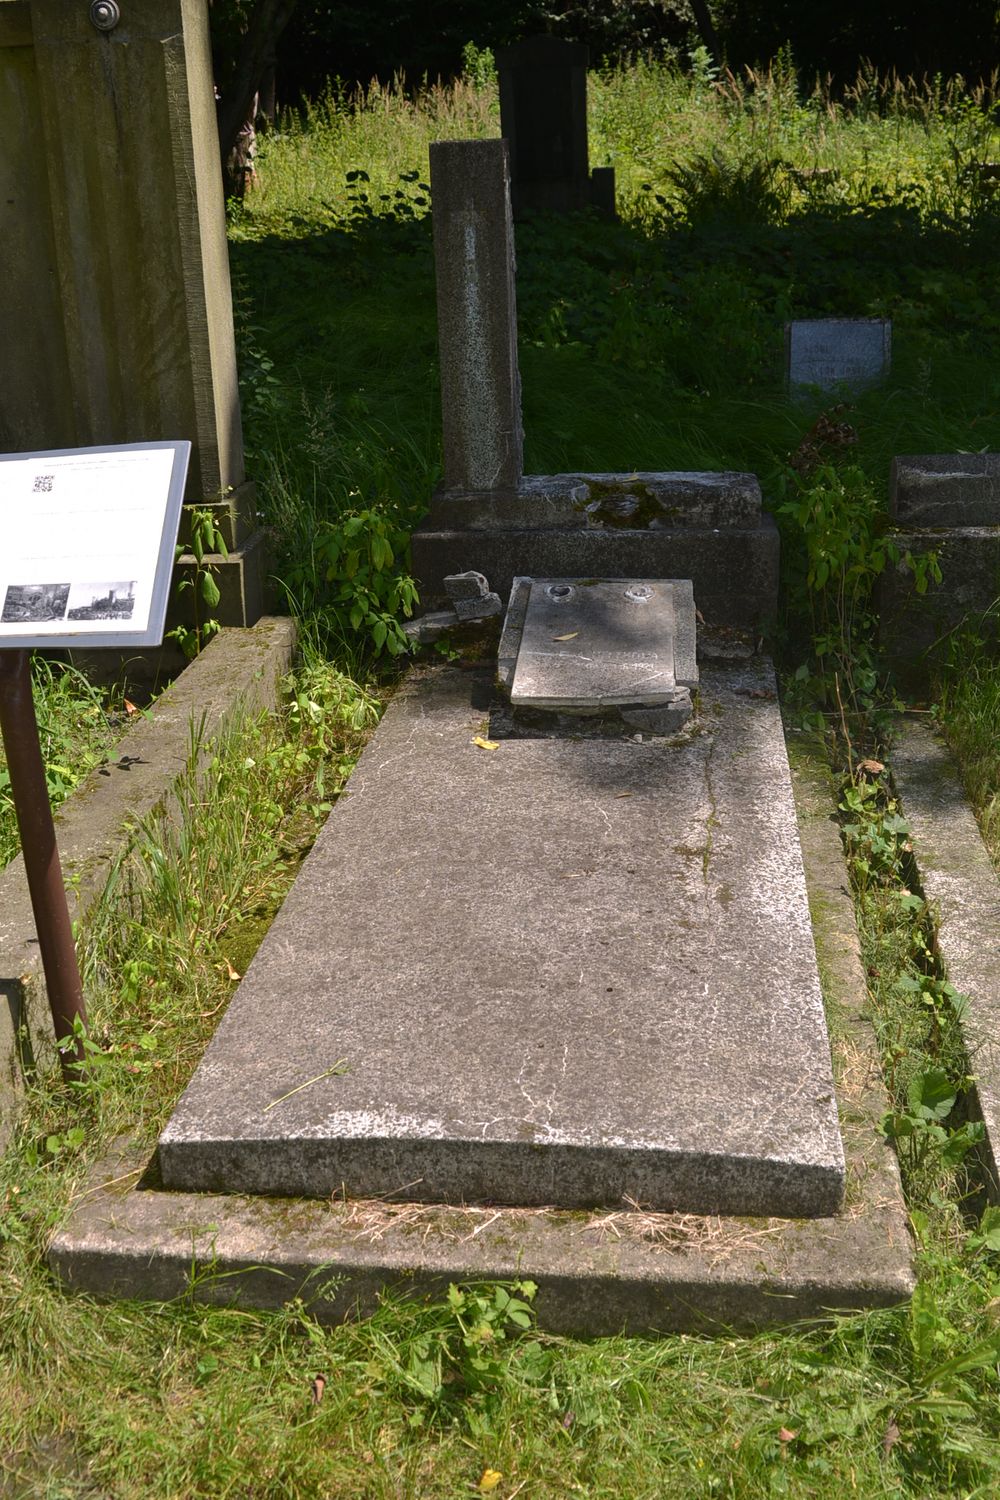 Tomb of Ewa, Jerzy and Katarzyna Heczek, cemetery in Karviná Mexico, Czech Republic, as of 2022